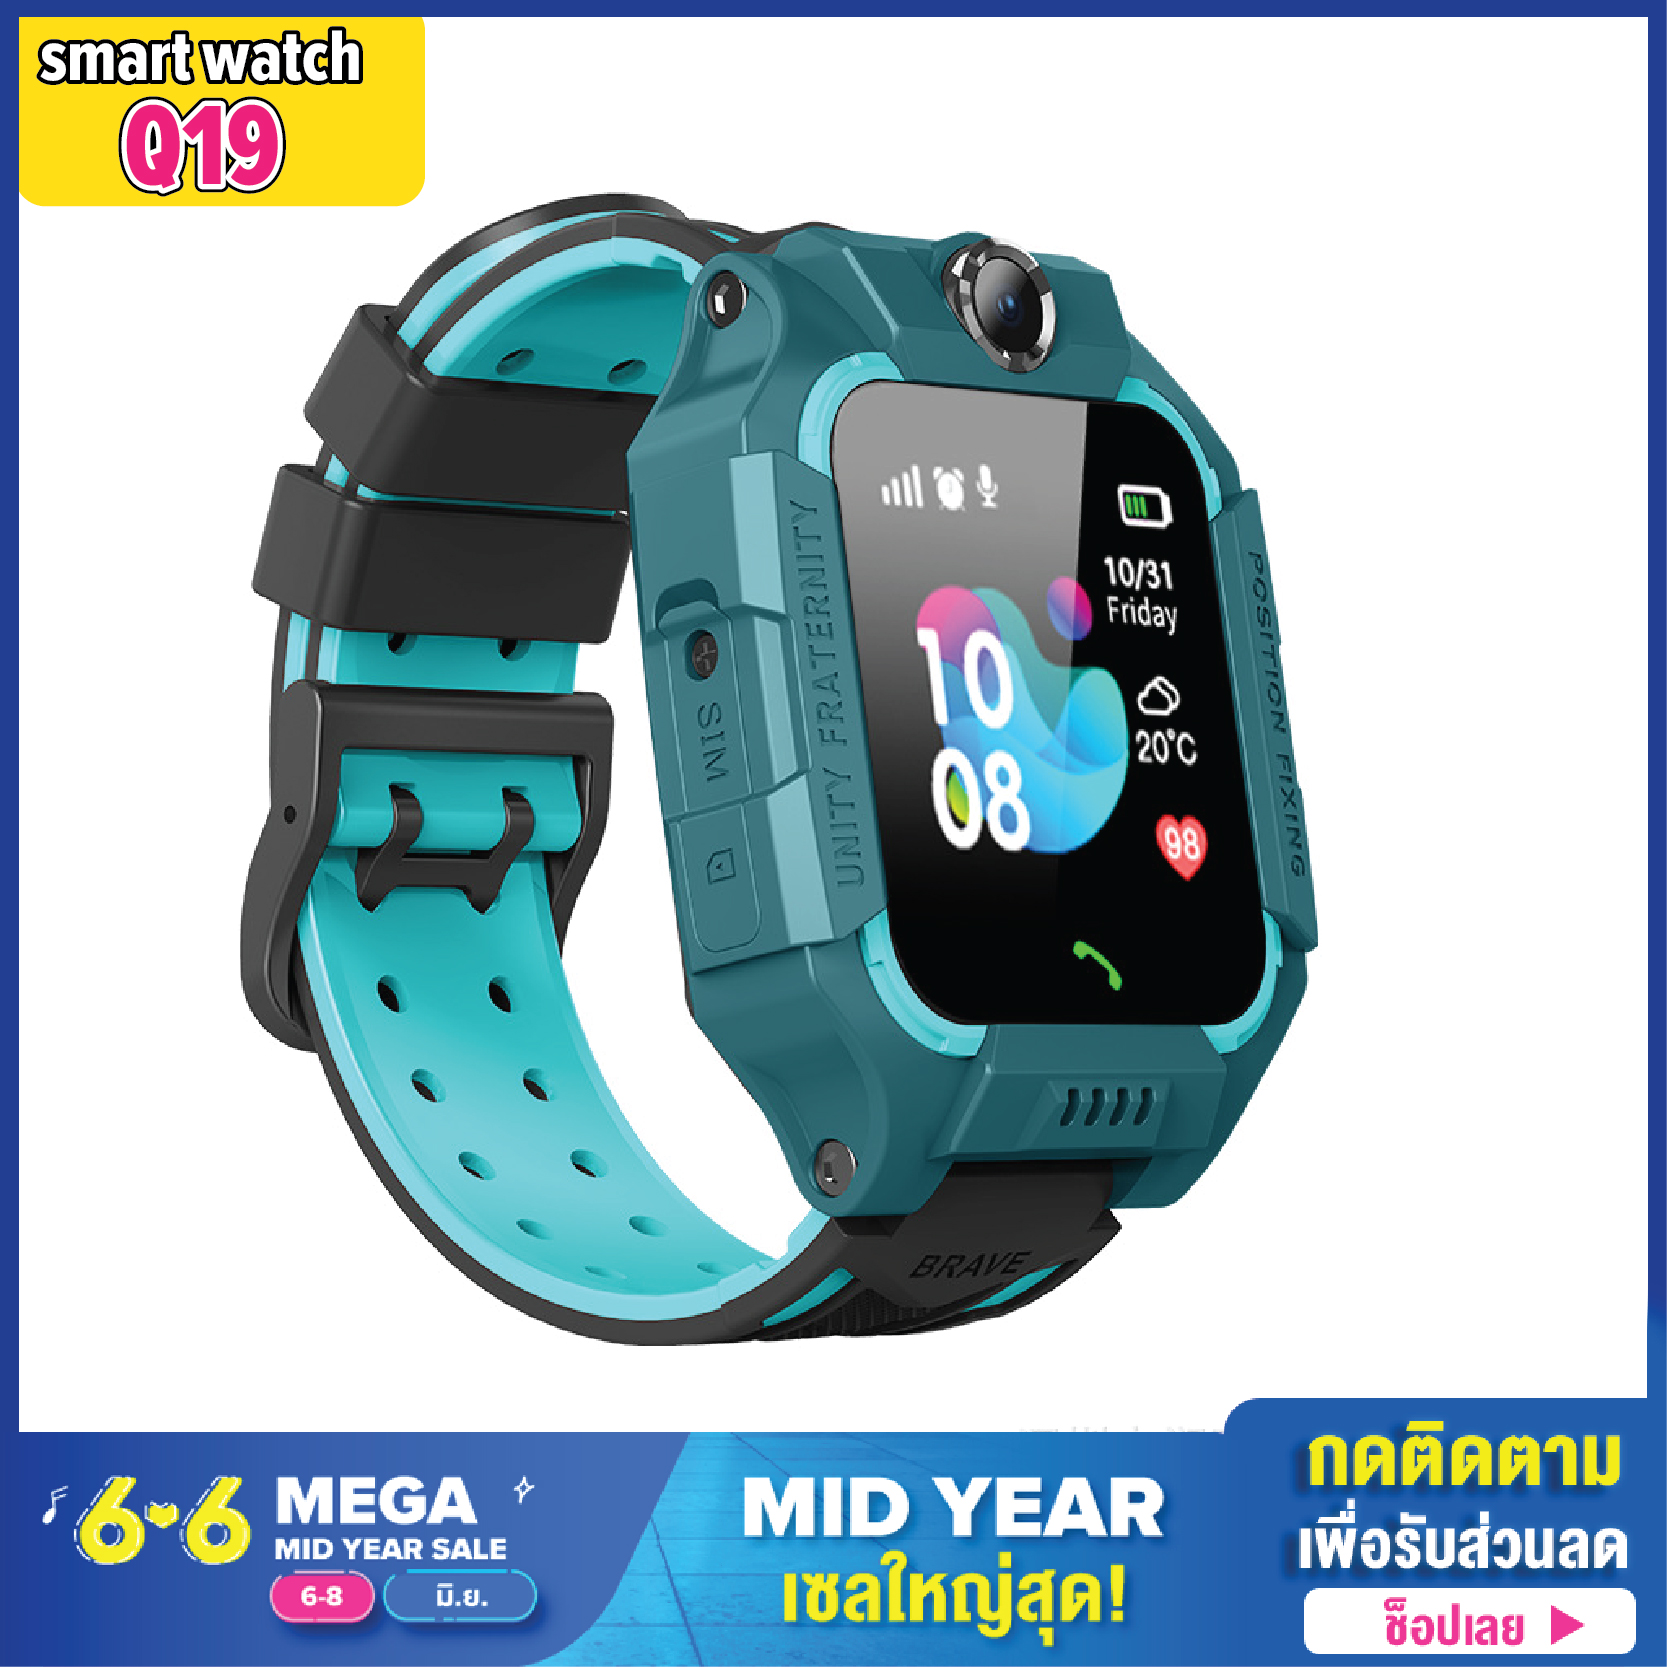 [ส่งจากไทย] [การันตีถูกสุด] นาฬิกาเด็ก รุ่น Smart Watch Q19 เมนูไทย รองรับภาษาไทย ใส่ซิมได้ โทรได้ พร้อมระบบ GPS ติดตามตำแหน่ง Kid Smart Watch นาฬิกาป้องกันเด็กหาย ไอโม่ imoo สมาร์ทวอชท์ นาฬิกาอัจฉริยะ นาฬิกาเพื่อสุขภาพ ส่งไว บริการเก็บเงินปลายทาง